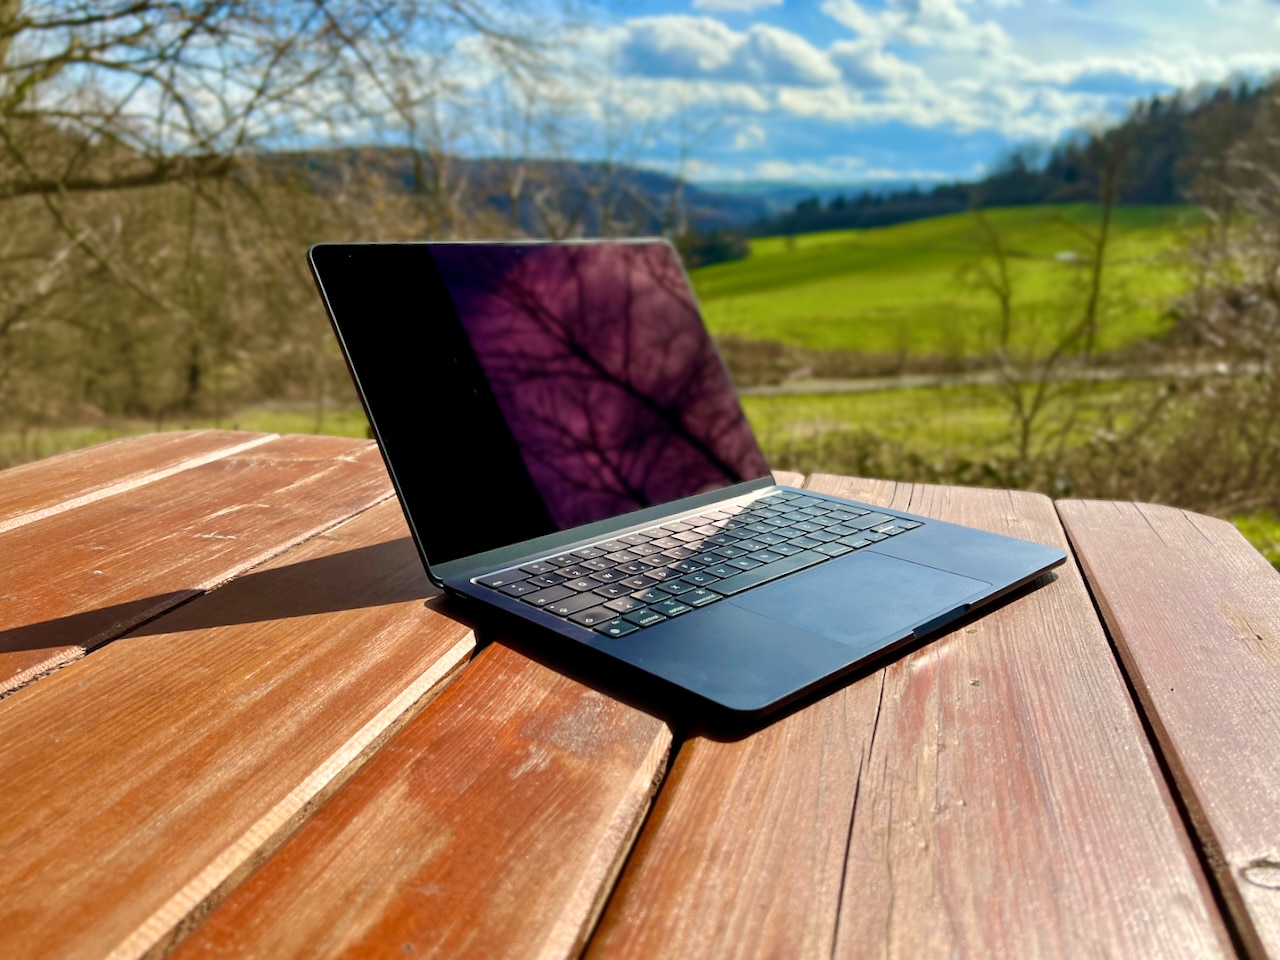 Trabalhando em trânsito com MacBook, iPhone e iPad – fluxos de trabalho perfeitos no escritório ao ar livre?